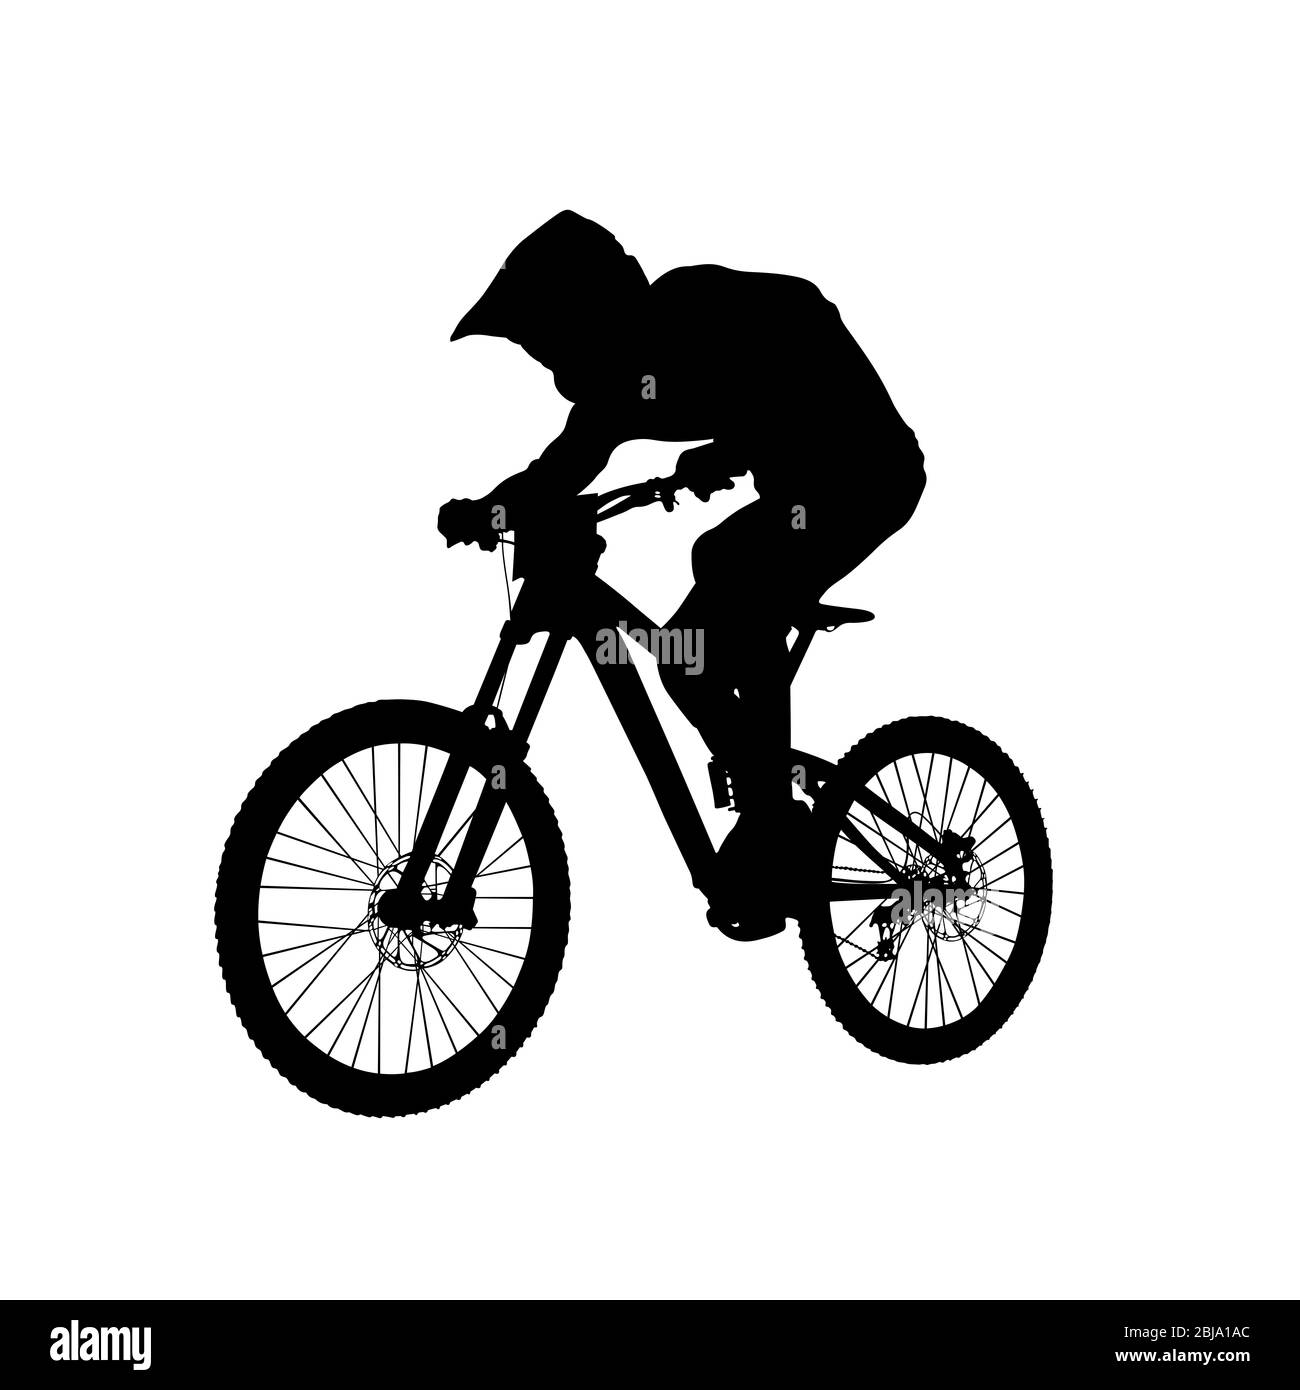 downhill mountain biking athlete rider black silhouette Stock Photo